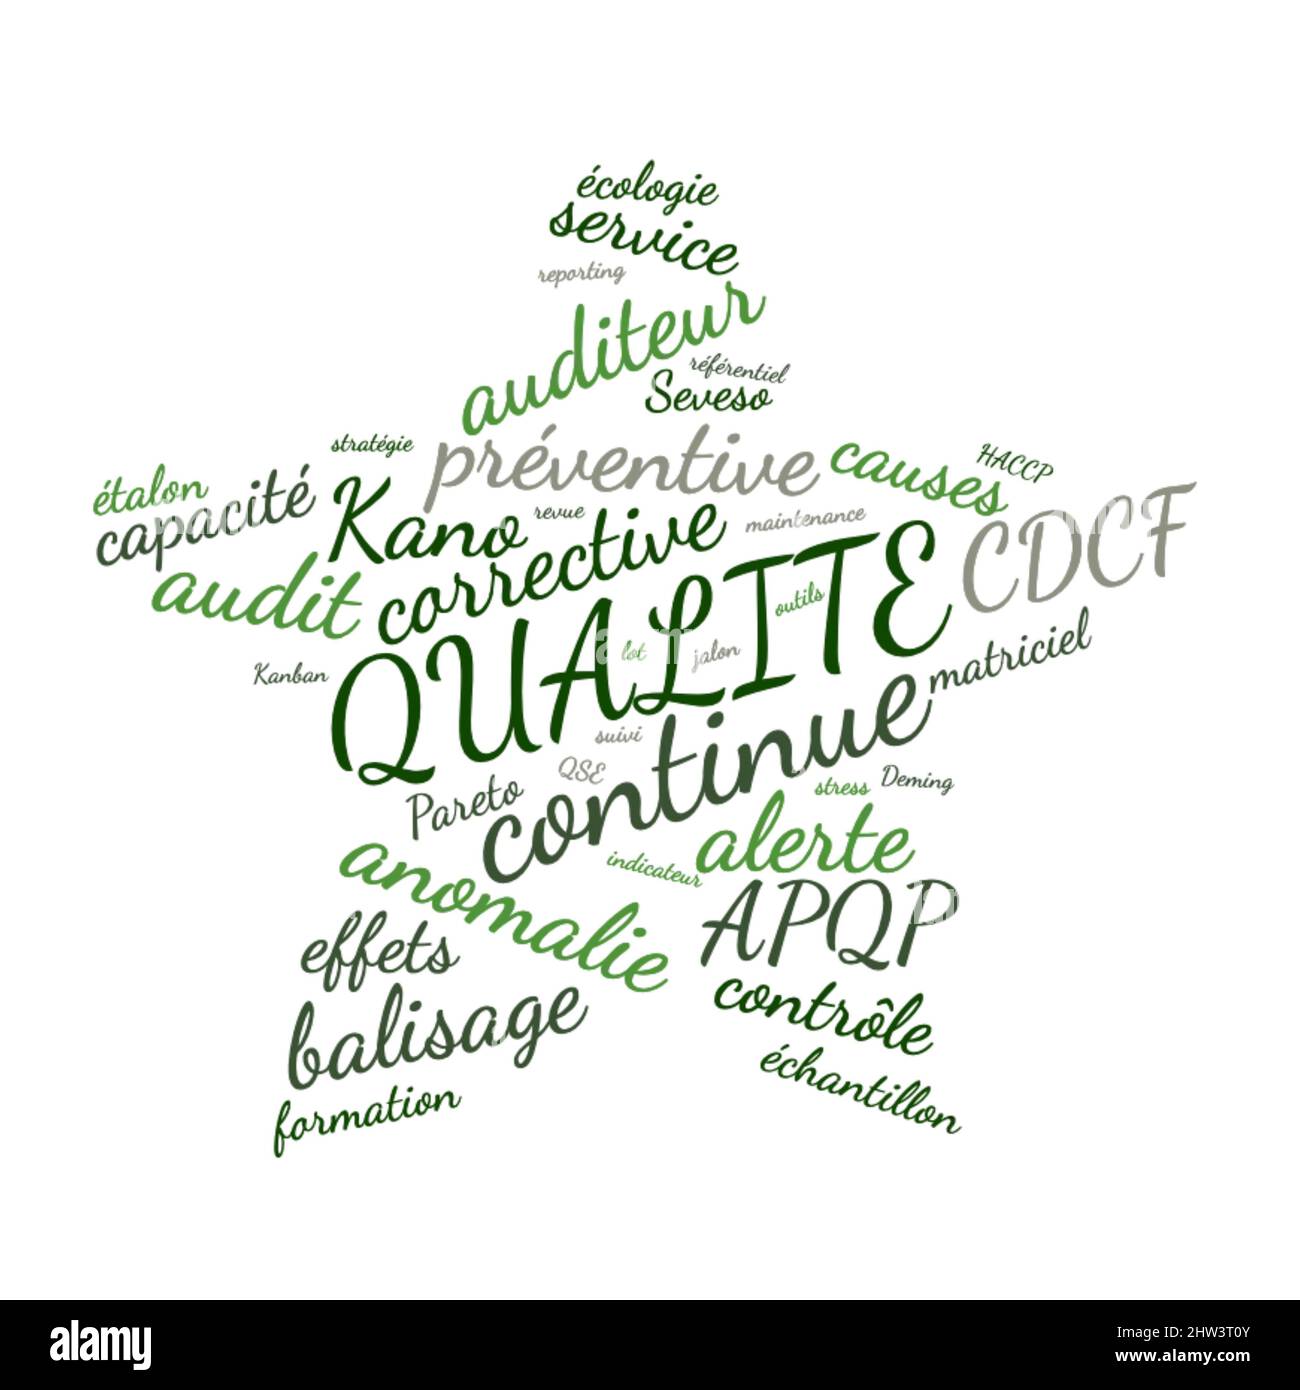 Hochwertige Wort Wolke Vektor-Illustration in französischer Sprache Stockfoto